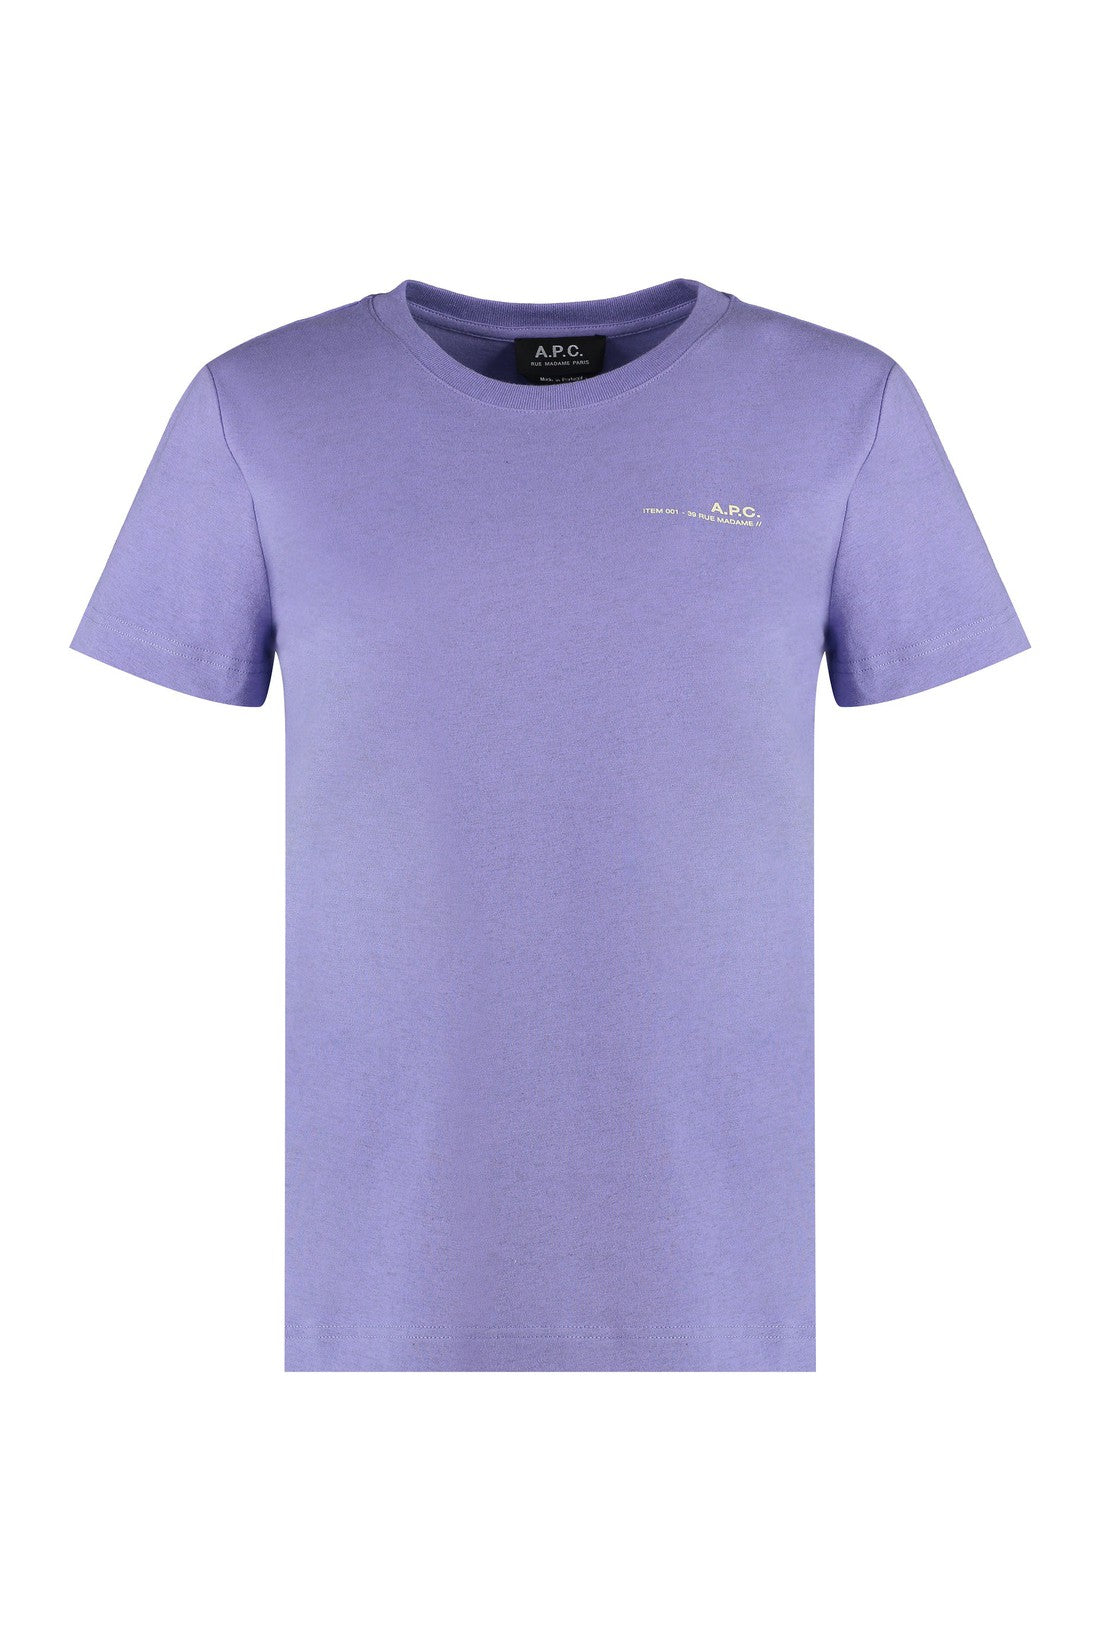 A.P.C.-OUTLET-SALE-Item Cotton T-shirt-ARCHIVIST